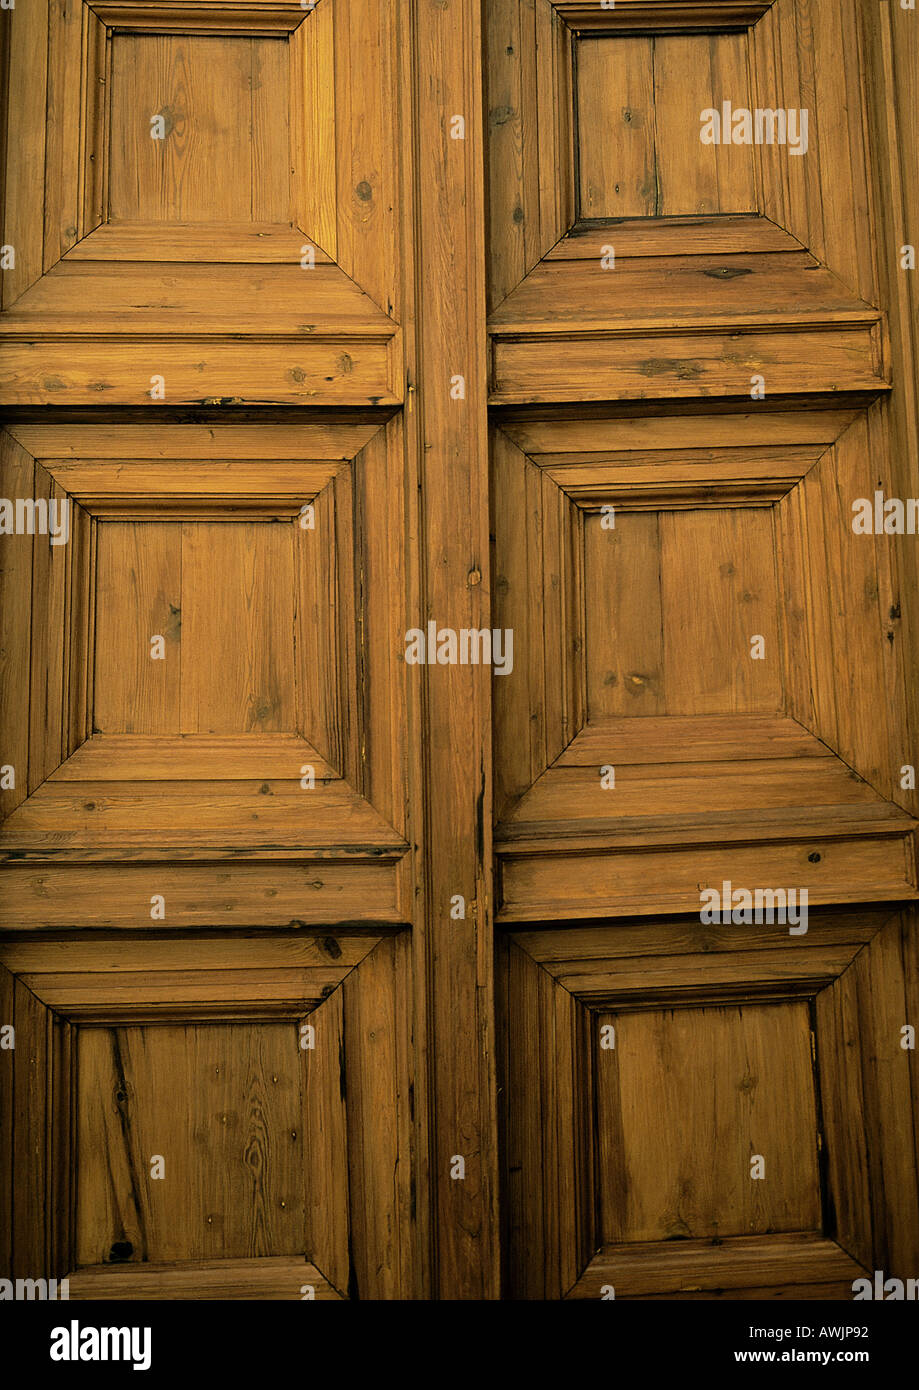 Paneled wooden door, full frame Stock Photo